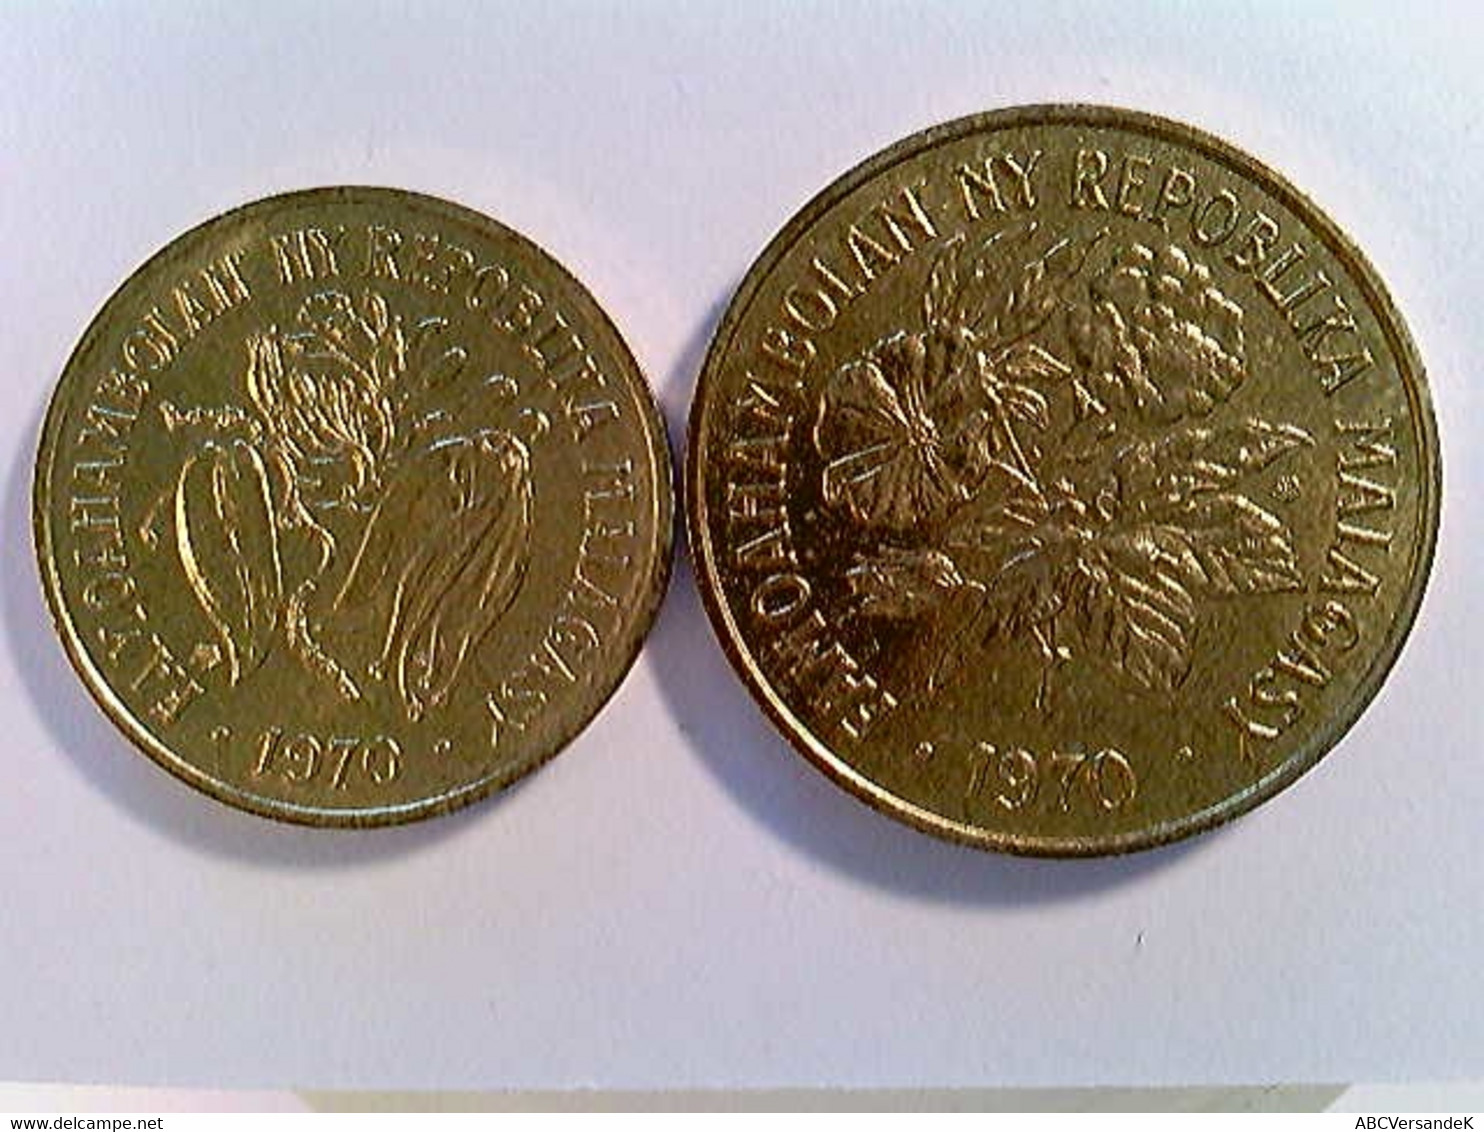 Münzen Madagascar, 10 Und 20 Franca 1970, FAP Series, TOP, Konvolut - Numismatik